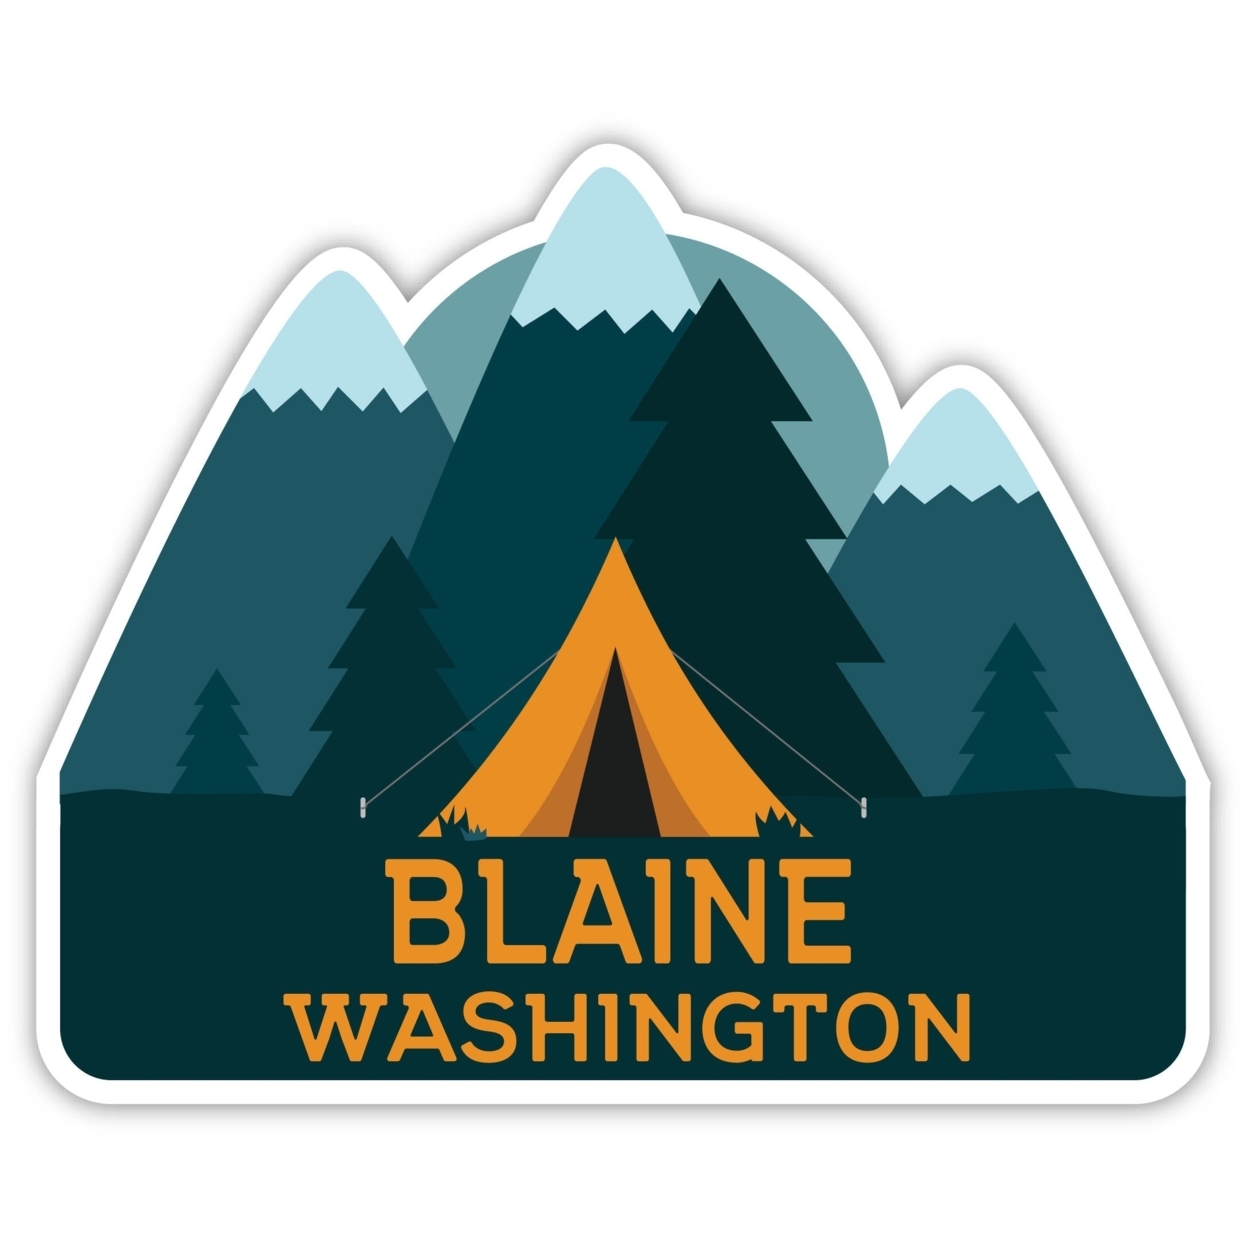 Blaine Washington Souvenir Decorative Stickers (Choose Theme And Size) - 4-Pack, 6-Inch, Tent